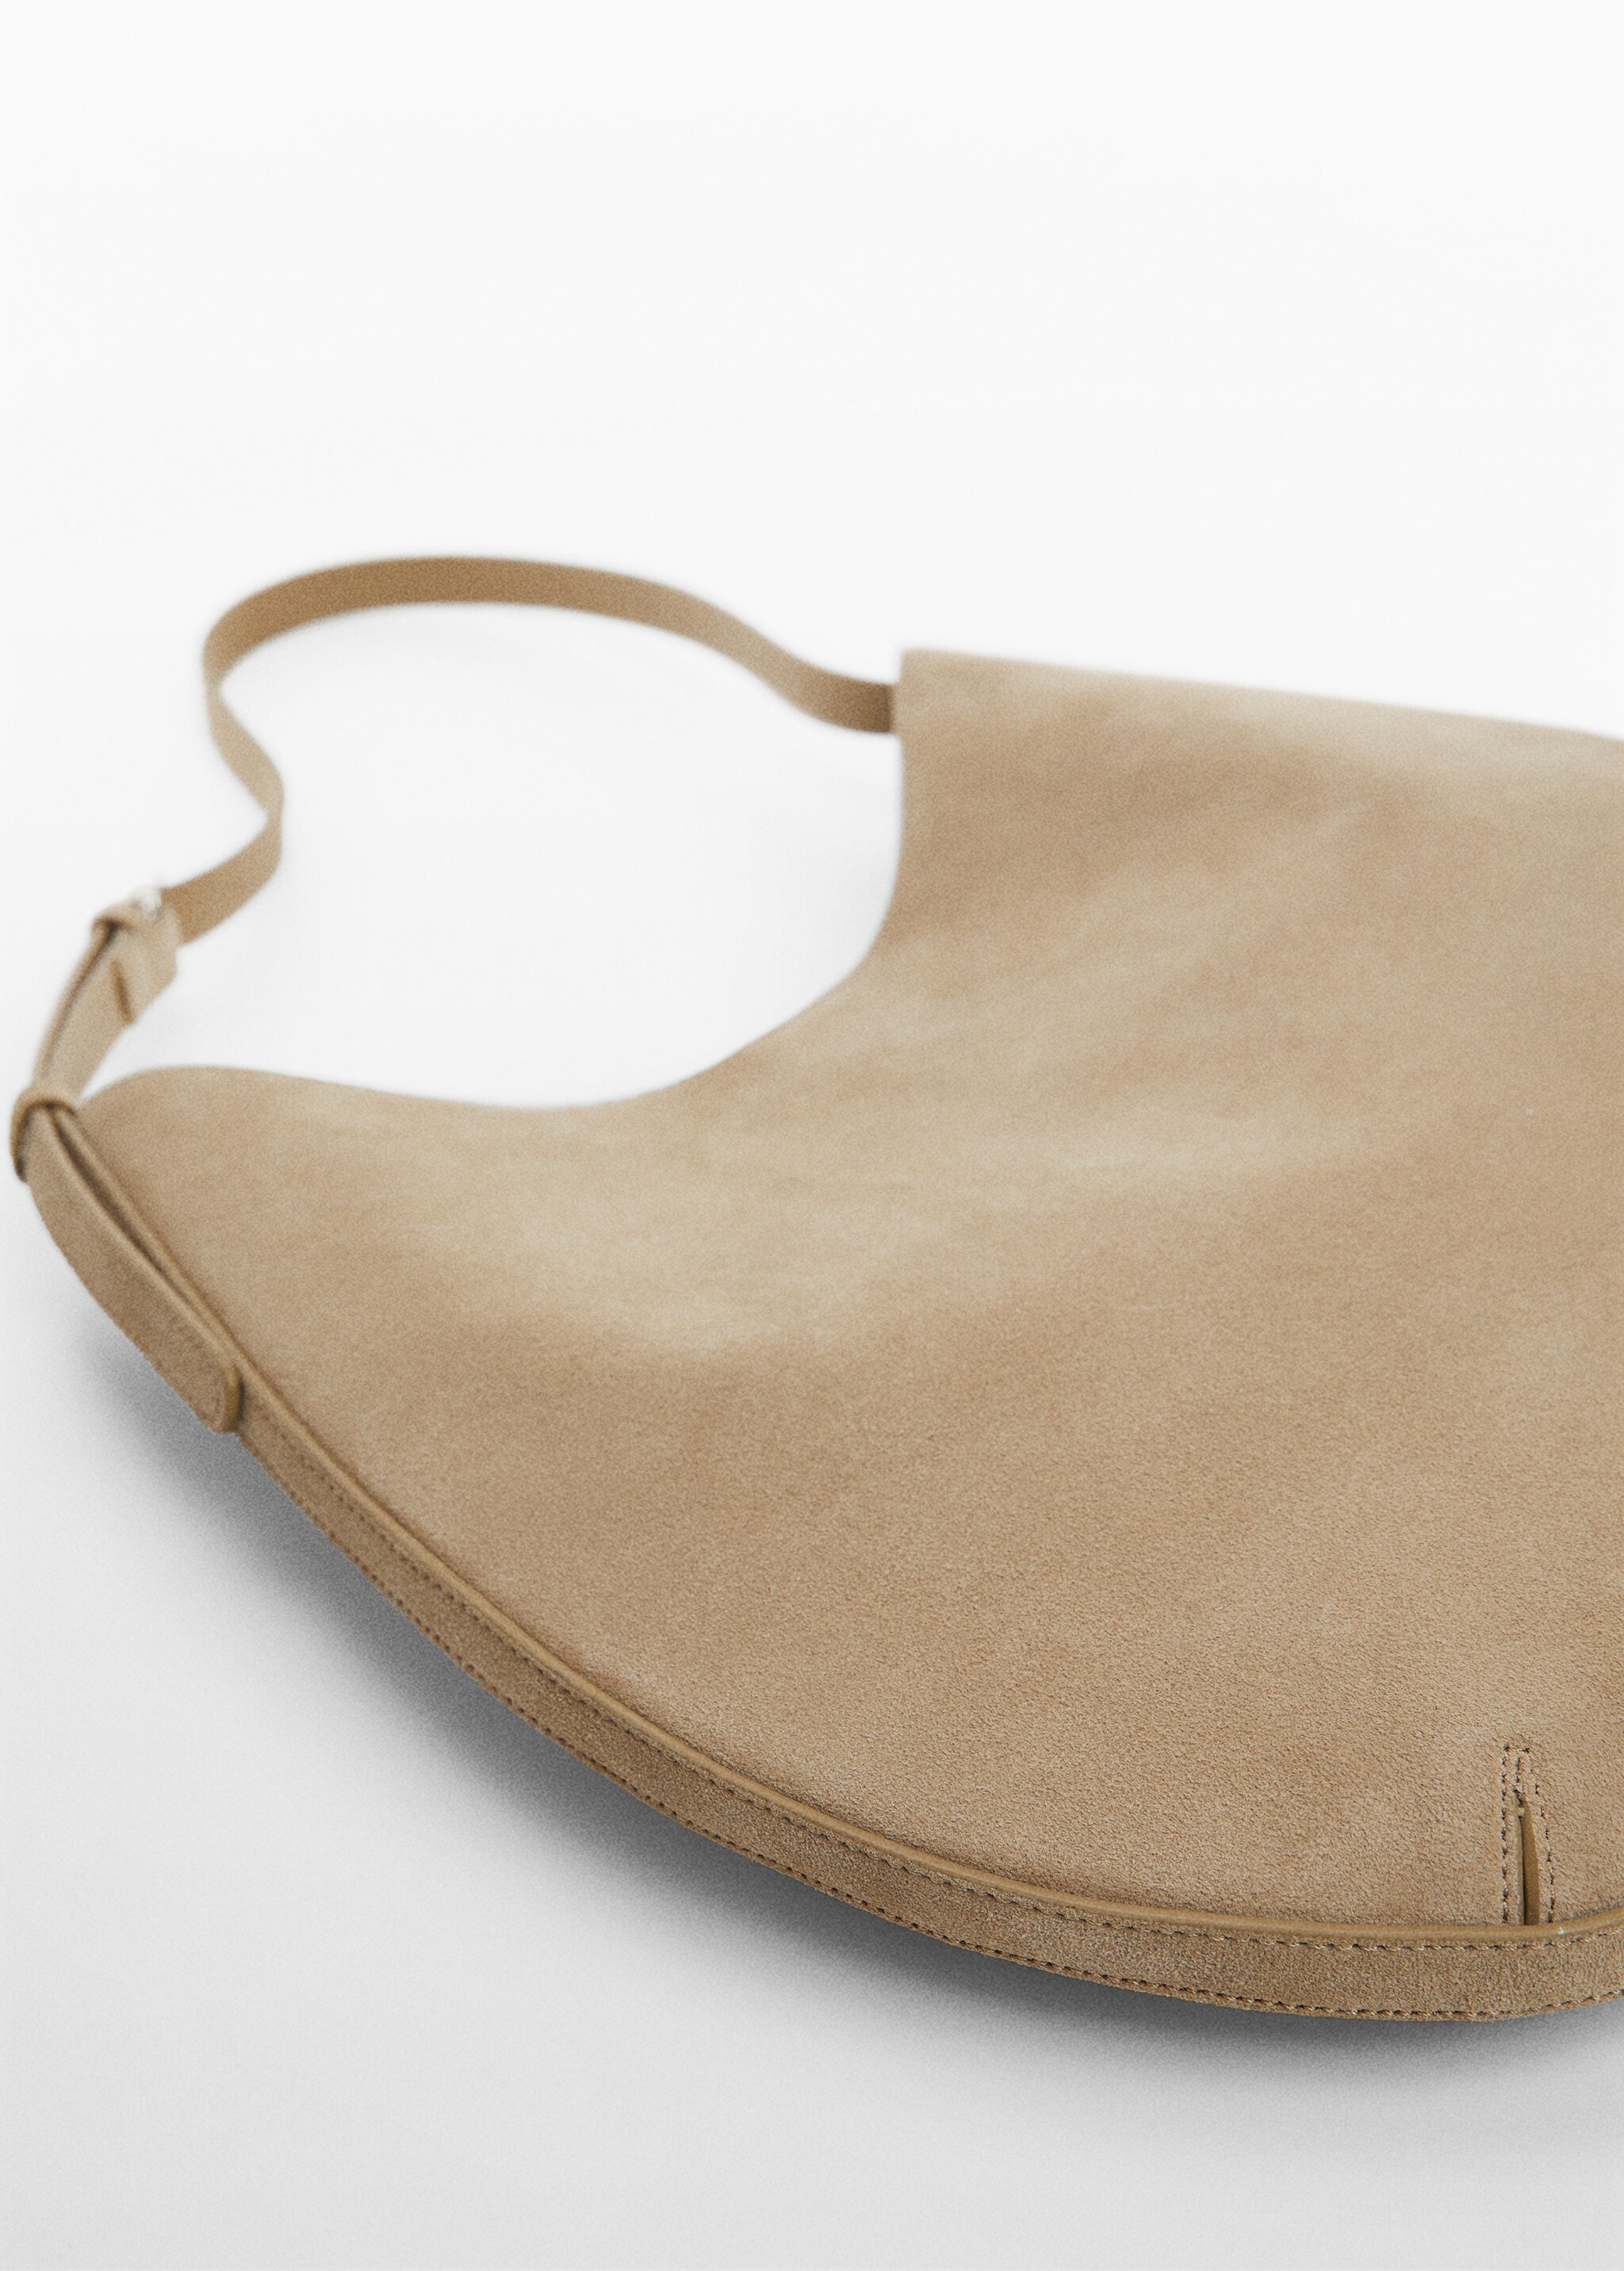 Кожаная сумка на плечевом ремне - Деталь изделия 1